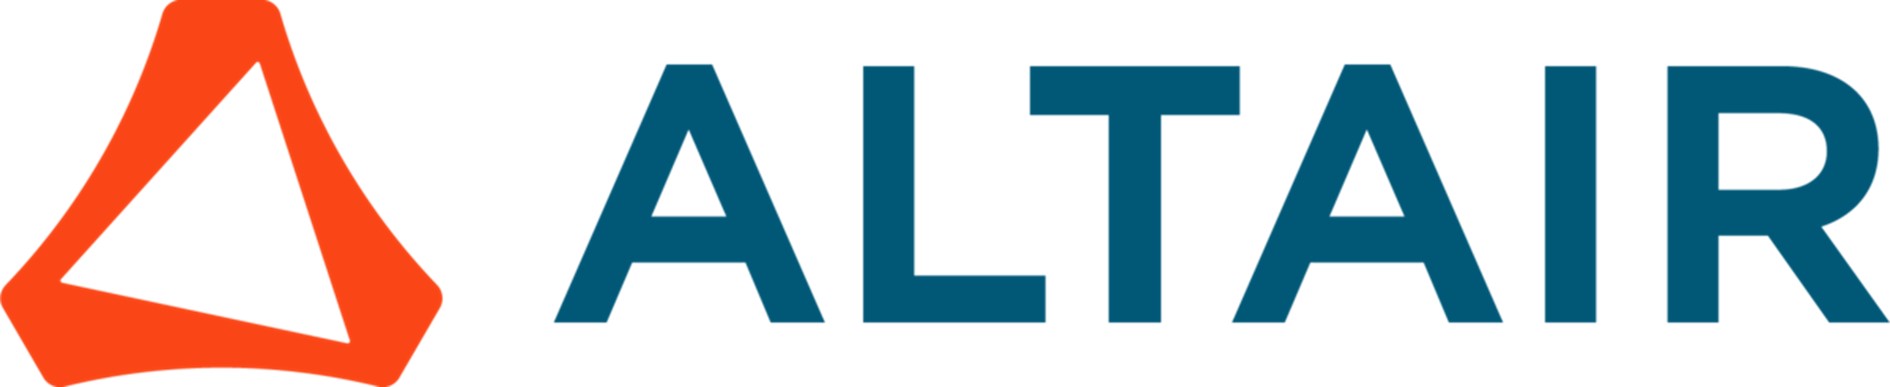 Après avoir lancé deux Chaires avec l’ESILV, l’éditeur de logiciels Altair renouvelle sa confiance en signant la nouvelle Chaire d’enseignement et de recherche CSHP.